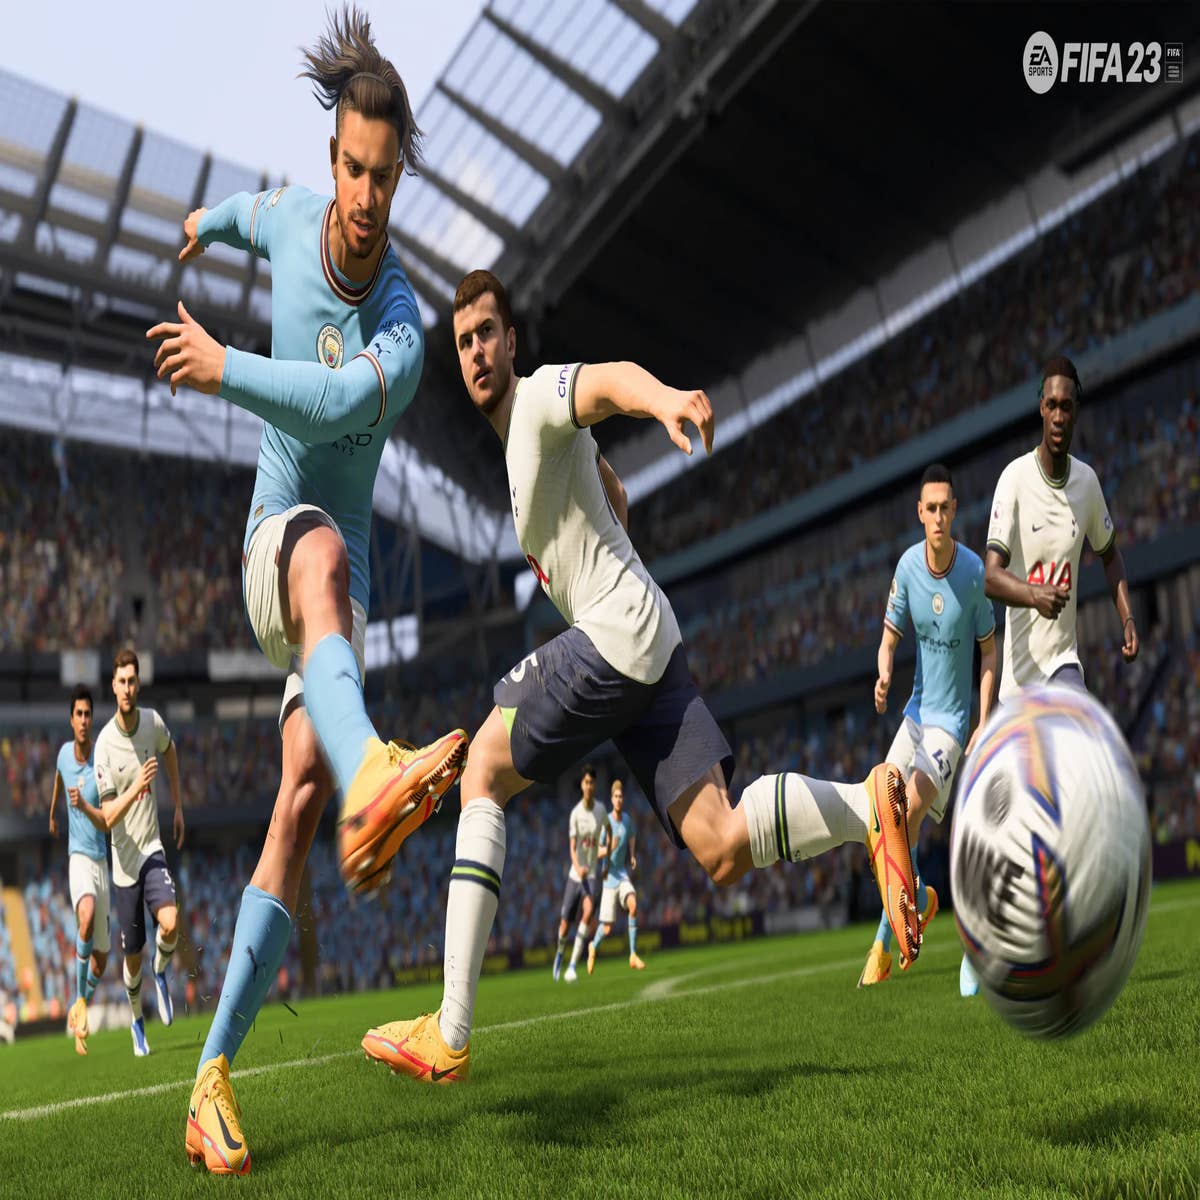 Fifa 23: game impressiona por realismo na aparência dos jogadores -  Esportes - R7 Lance